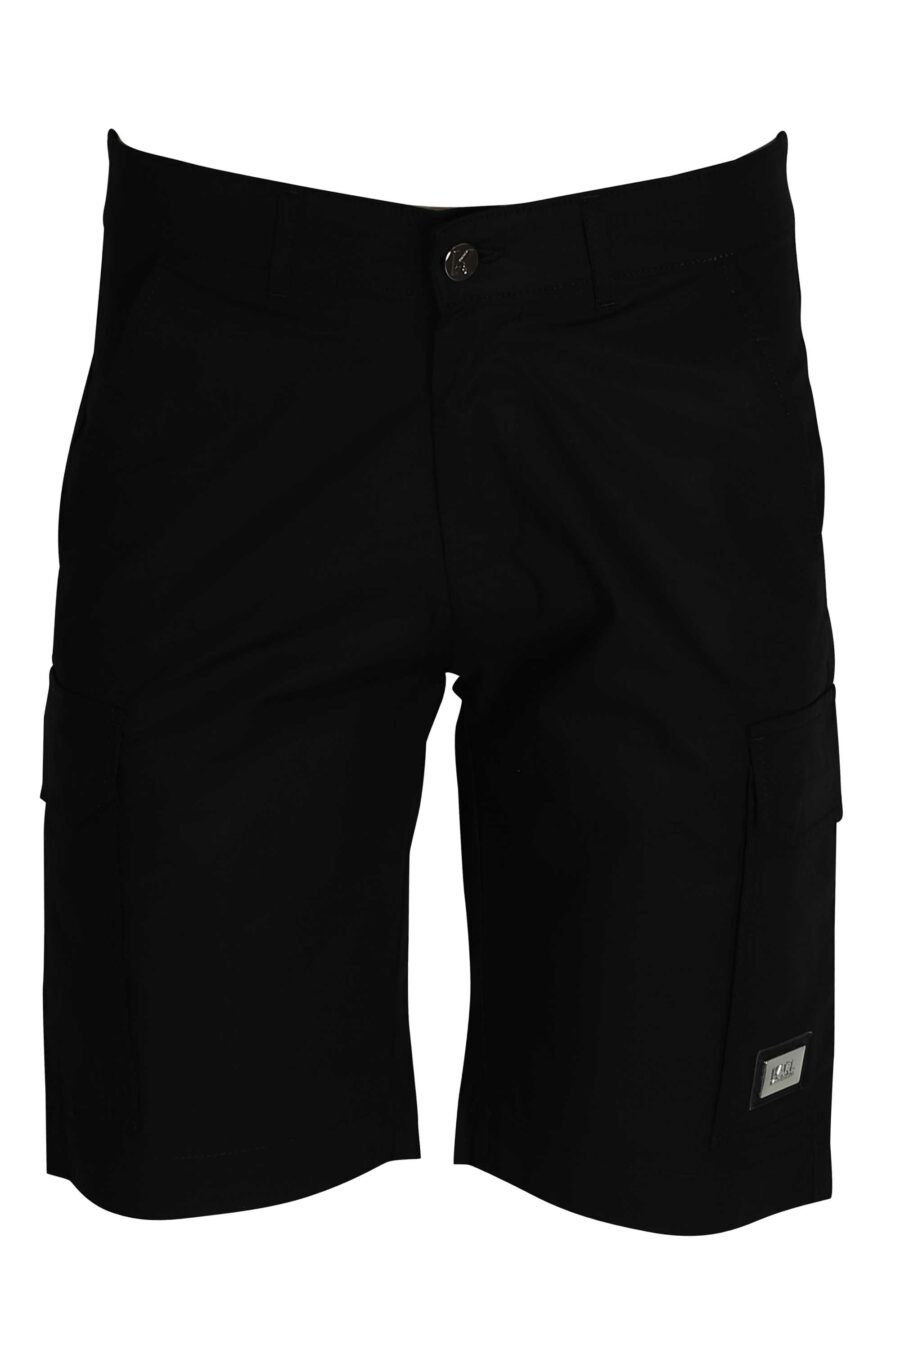 Schwarze Cargo-Shorts mit Logo - 4062226166942